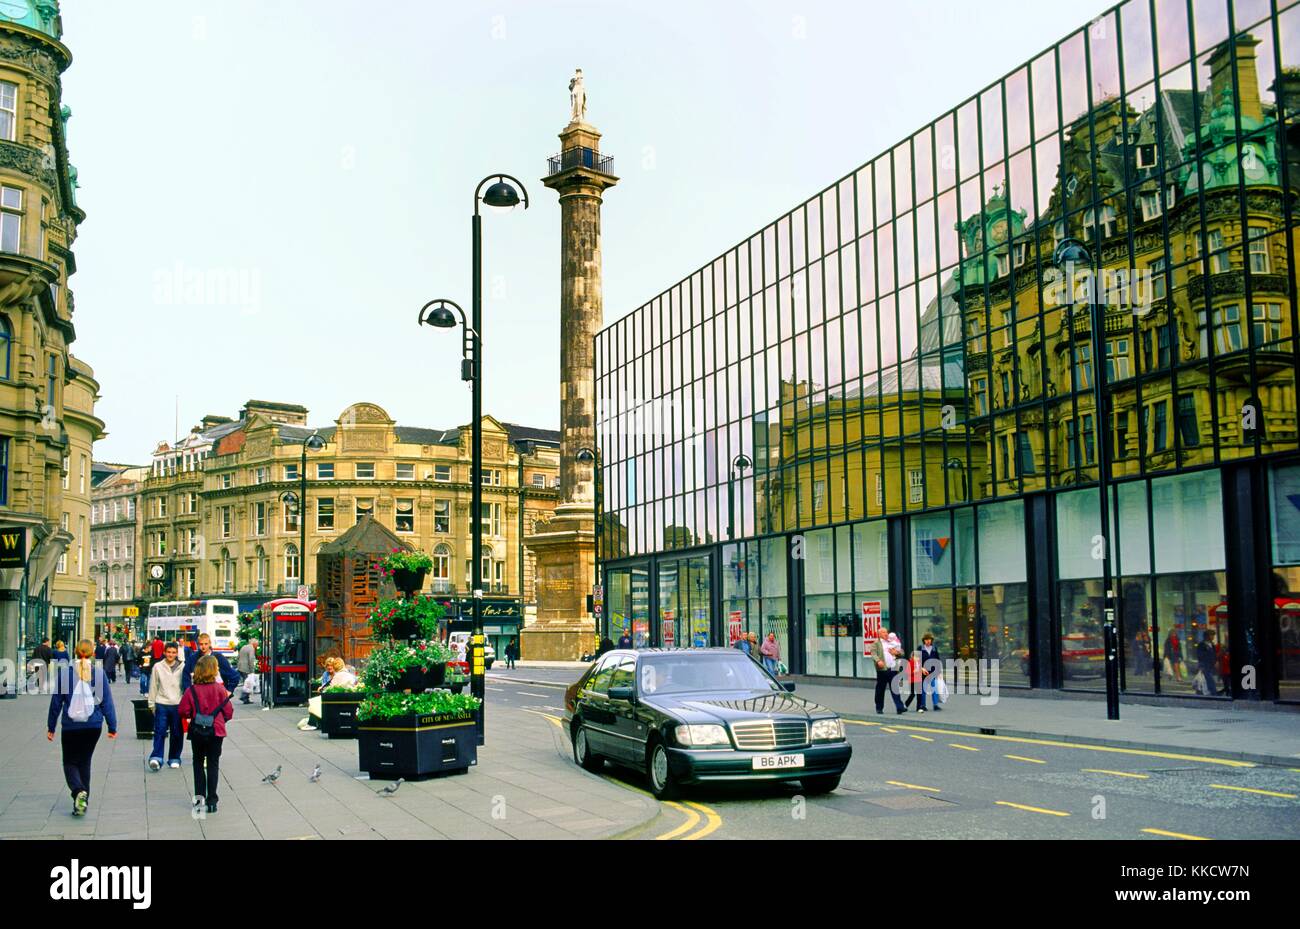 Le centre-ville de Newcastle upon Tyne, Angleterre, tyneside. blackett st. montrant le centre commercial Eldon Square et monument gris. Banque D'Images